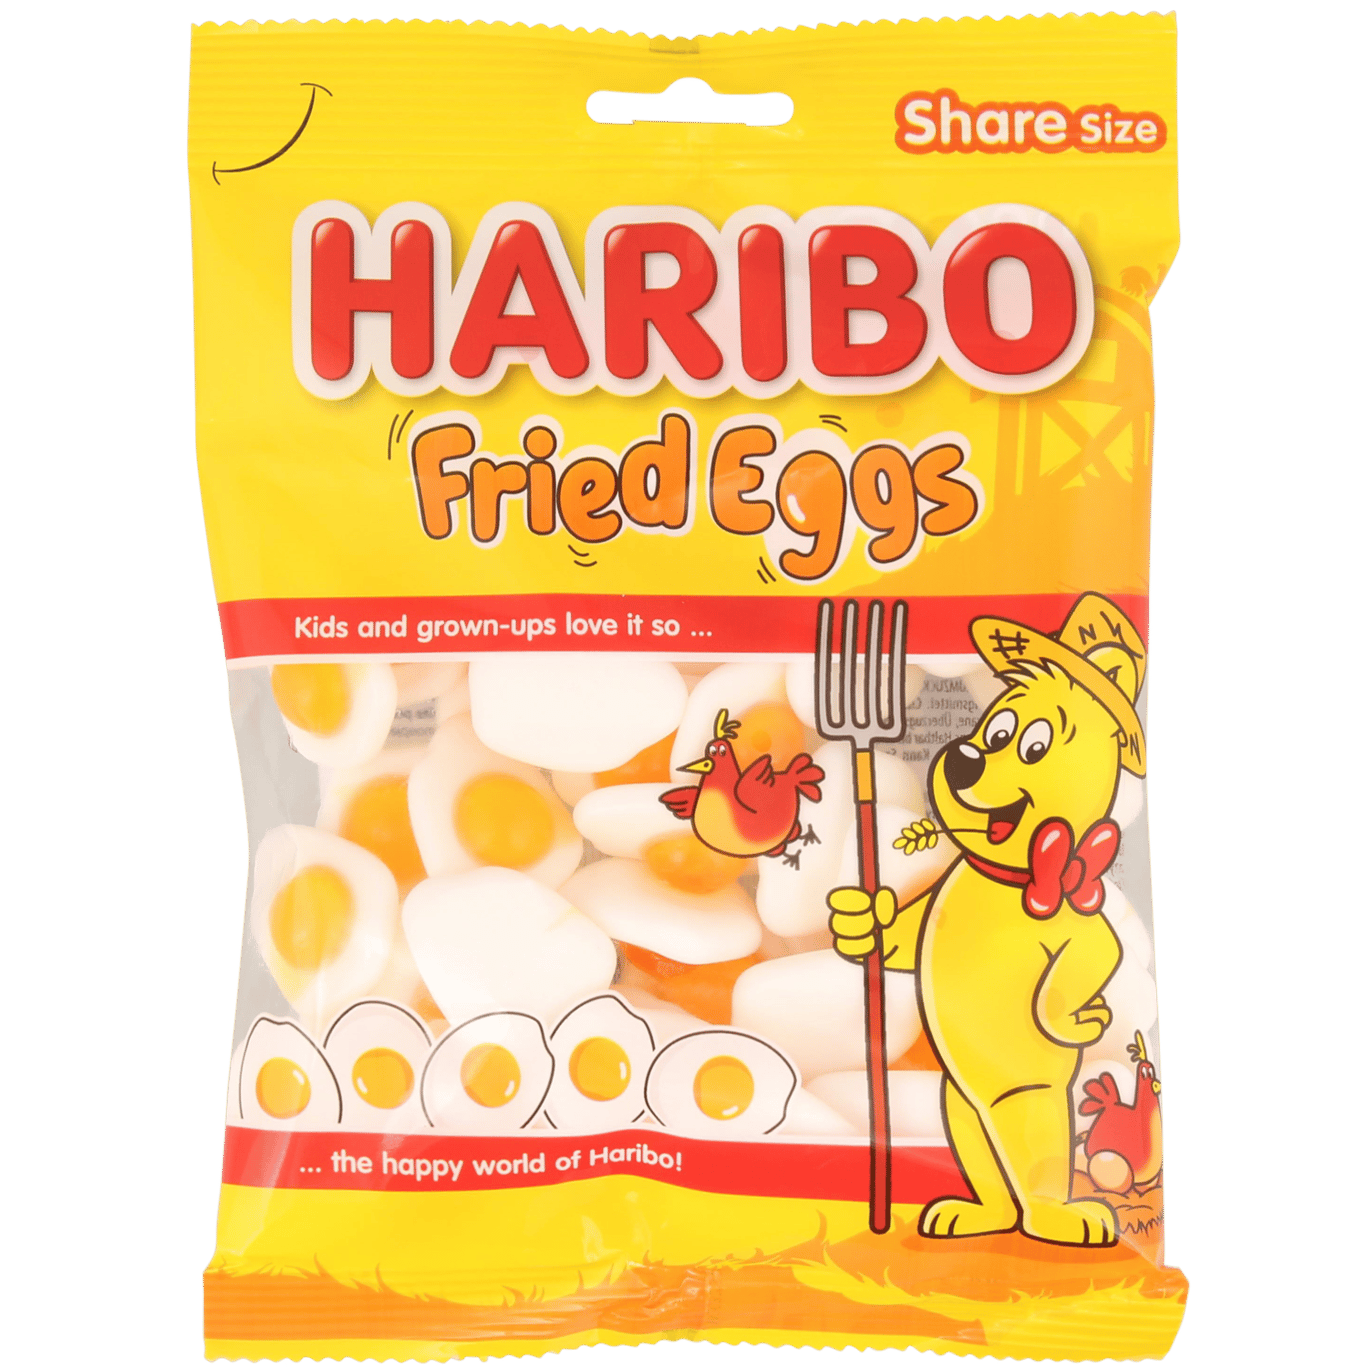 Huevos fritos Haribo